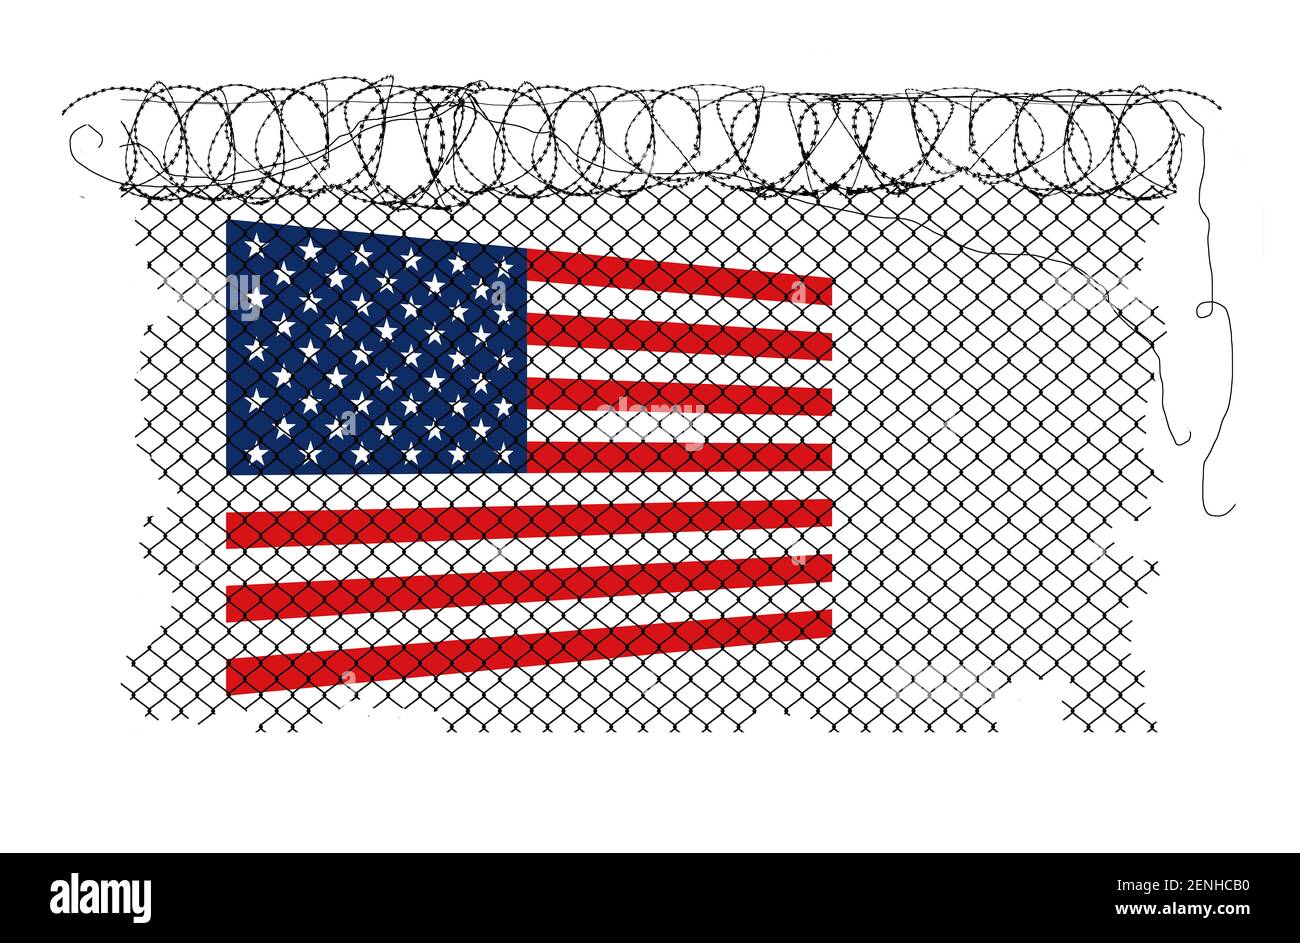 Un drapeau des États-Unis est visible derrière une barrière de fil de rasoir et de chaînette. Fait référence à la clôture construite autour du Capitole des États-Unis à Washington, DC. Banque D'Images